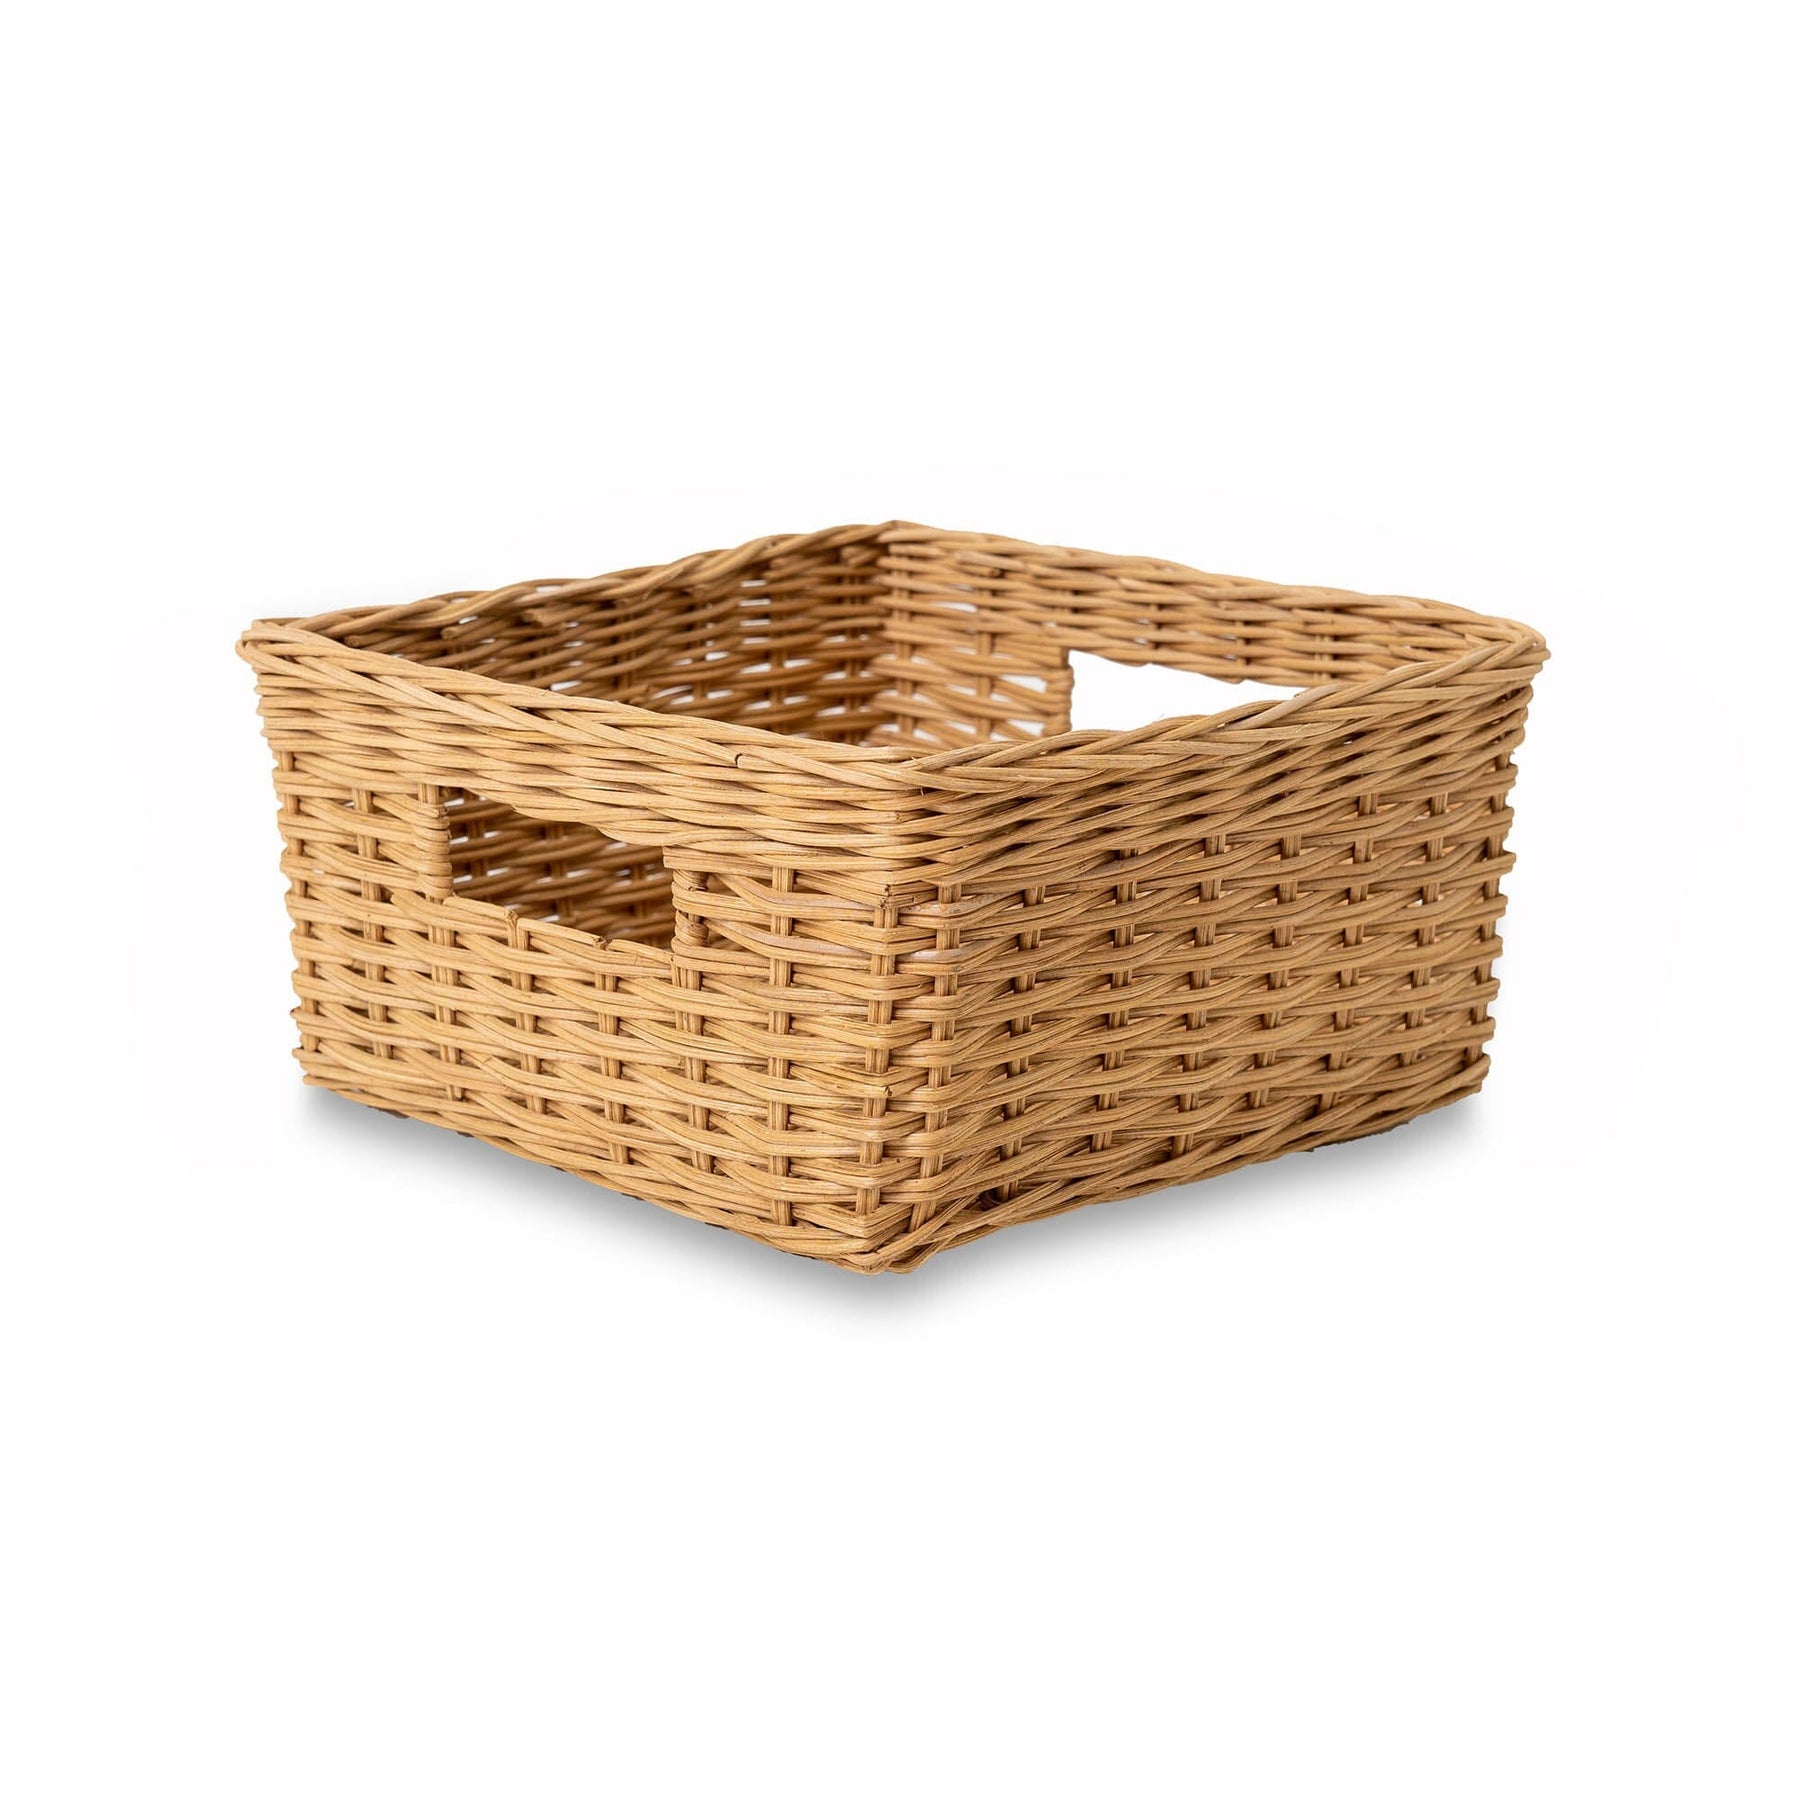 Square Low Wicker Storage Basket - Sandstone - Medium / No Liner